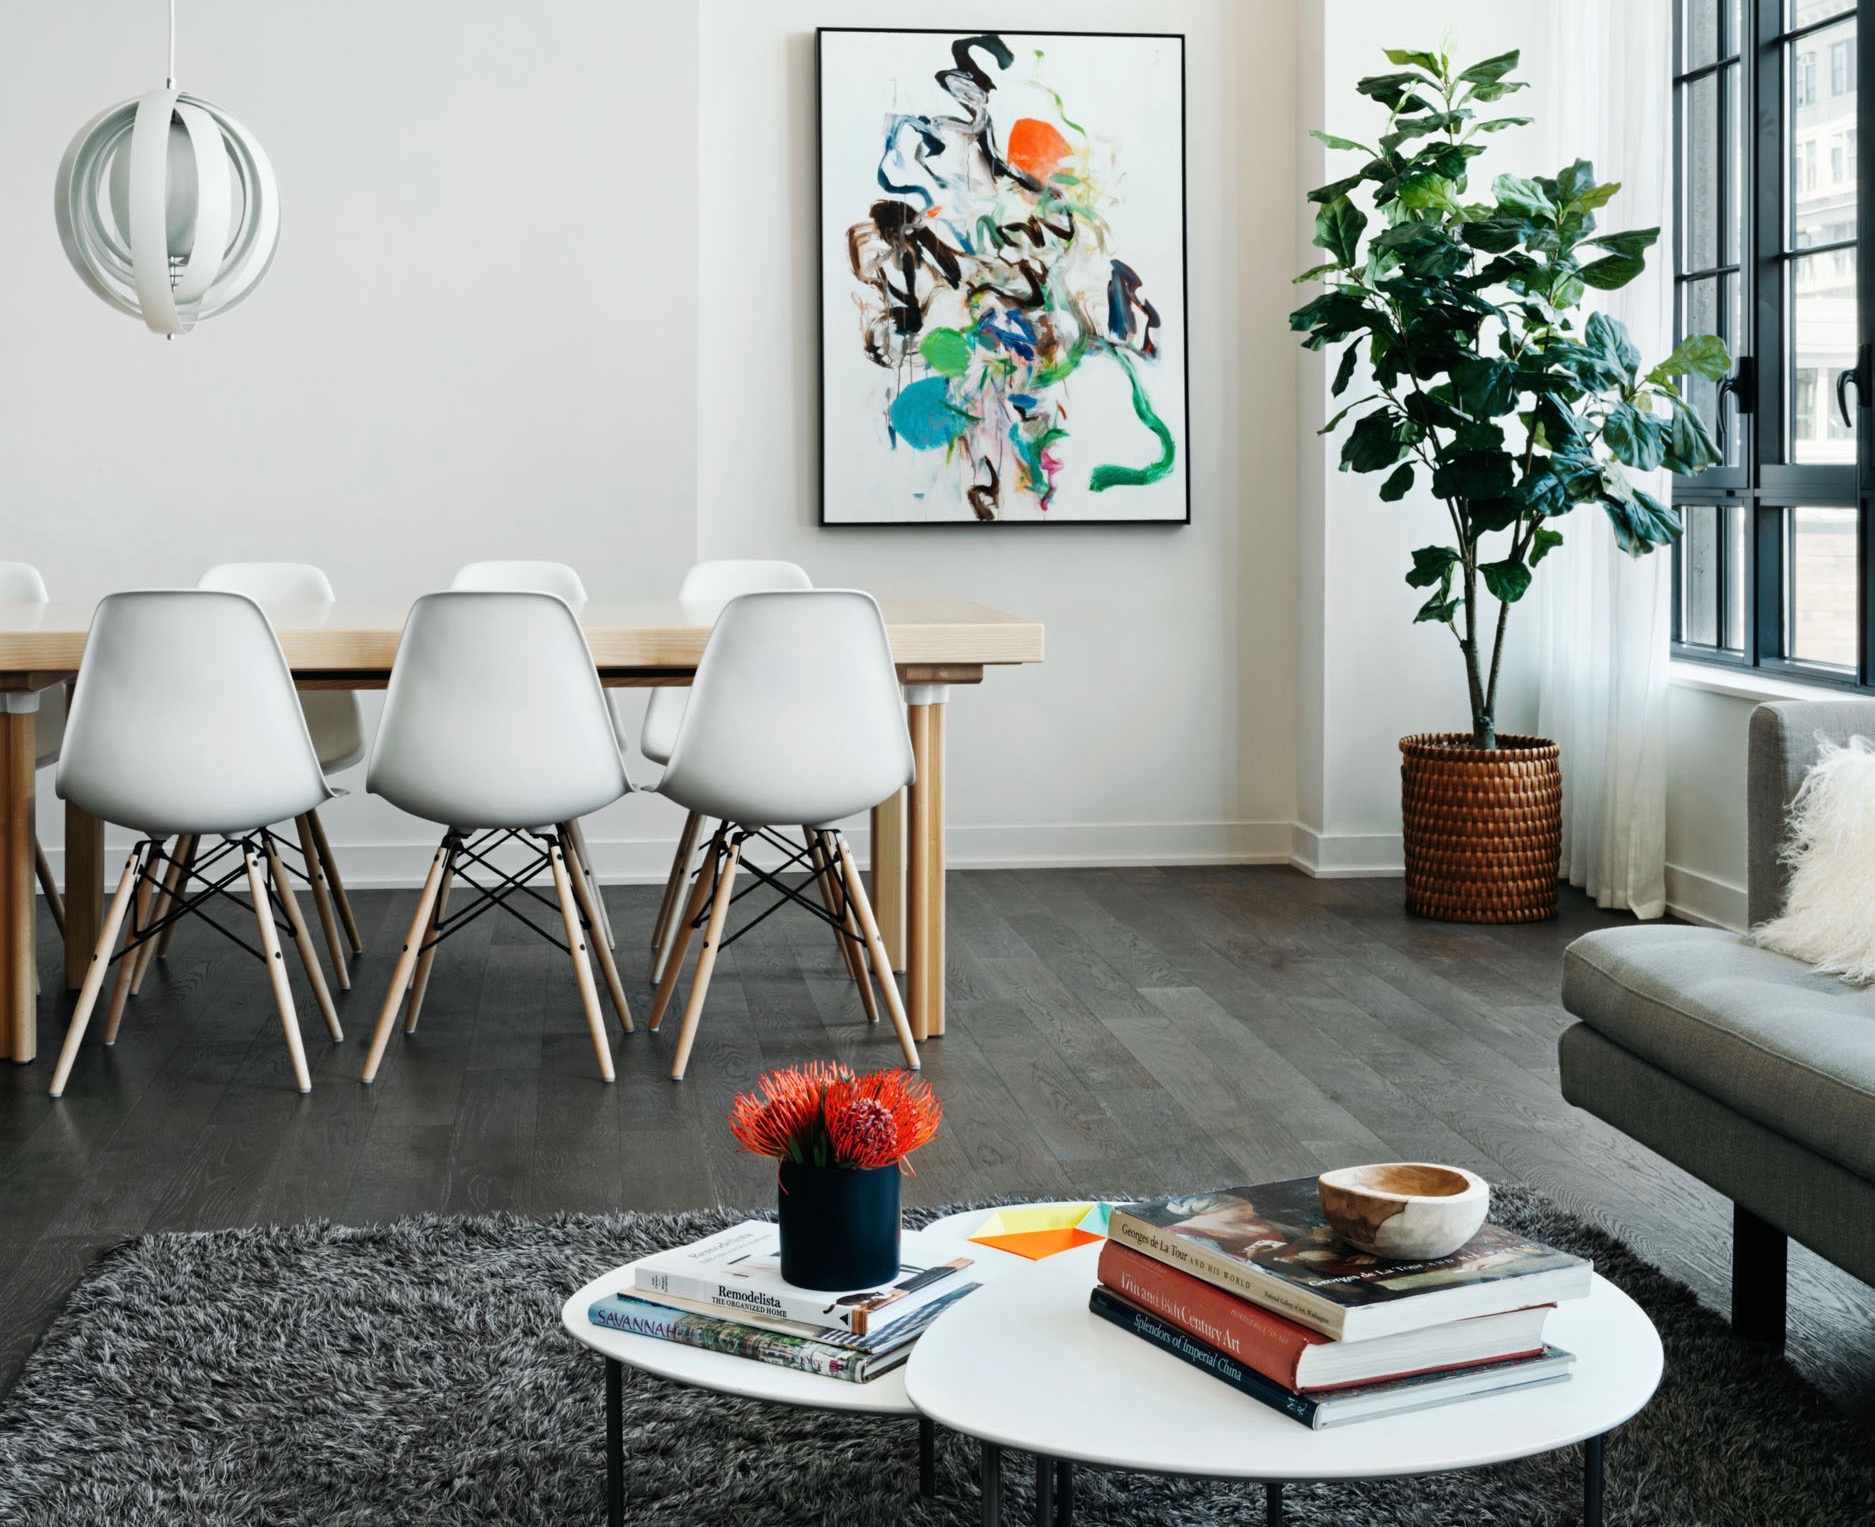 01modern_minimalist_livingroom_diningroom.jpg